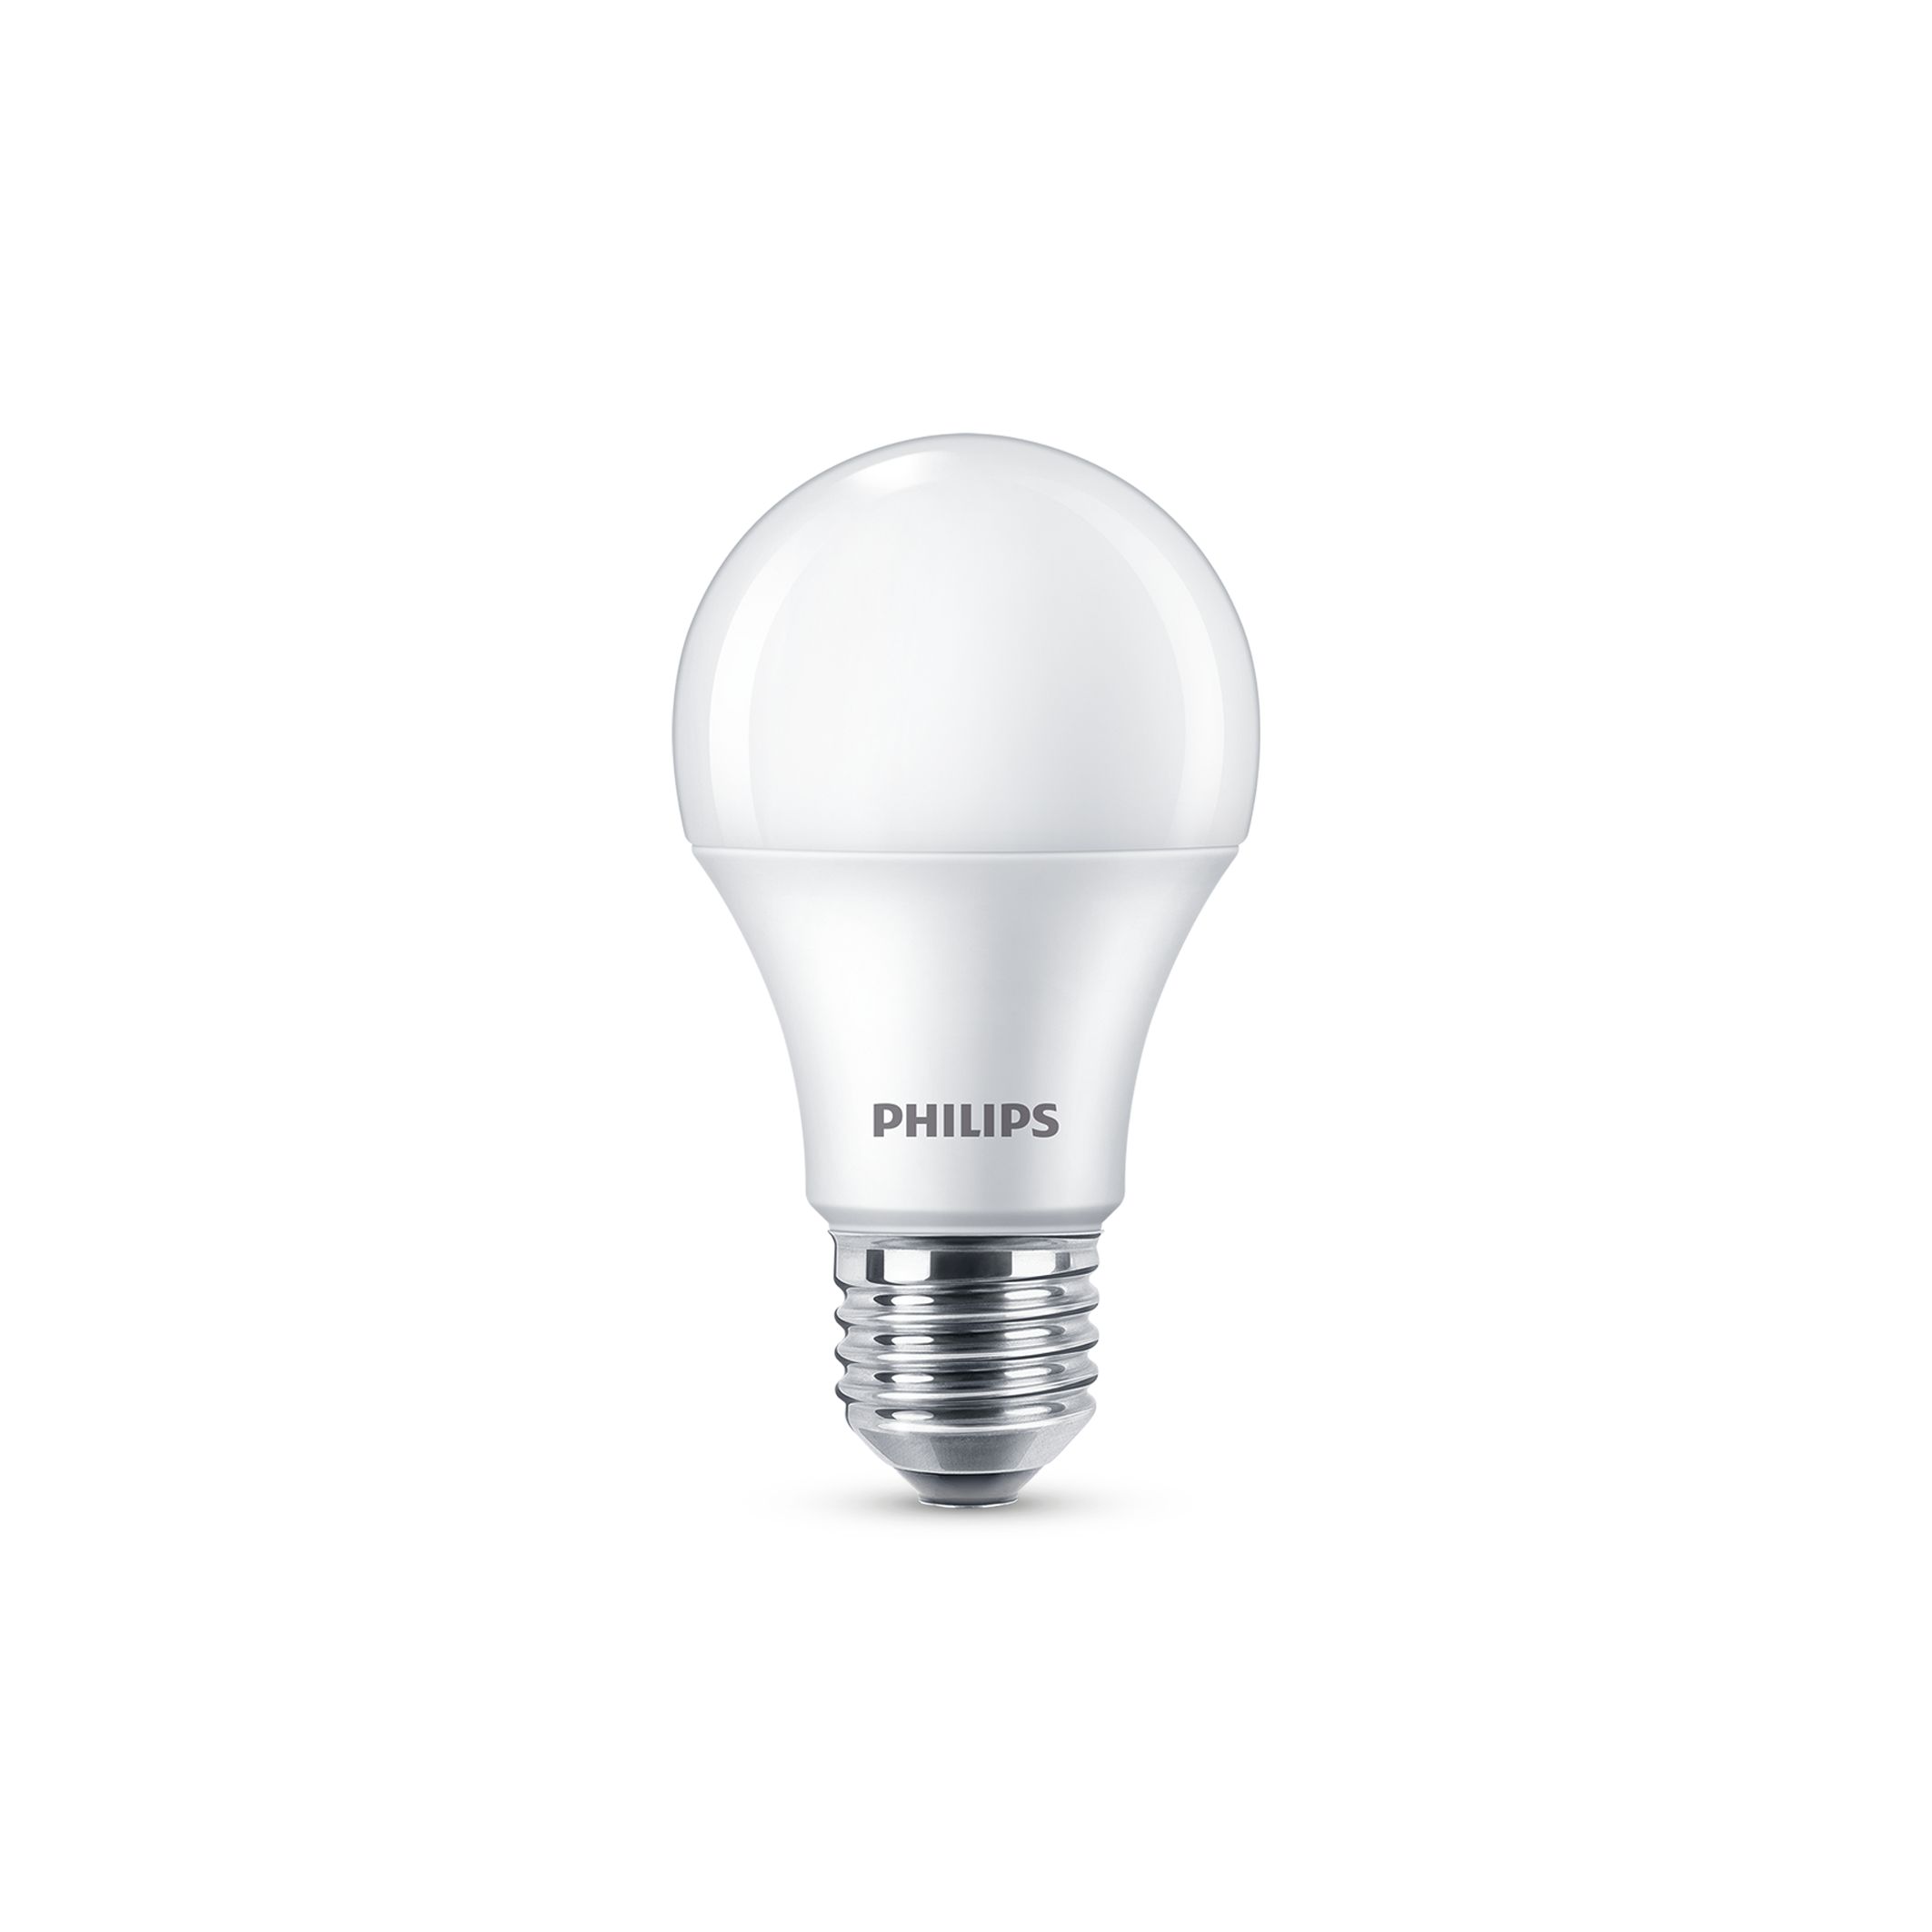 Vervolg Niet ingewikkeld Onophoudelijk LED bulbs | Philips lighting